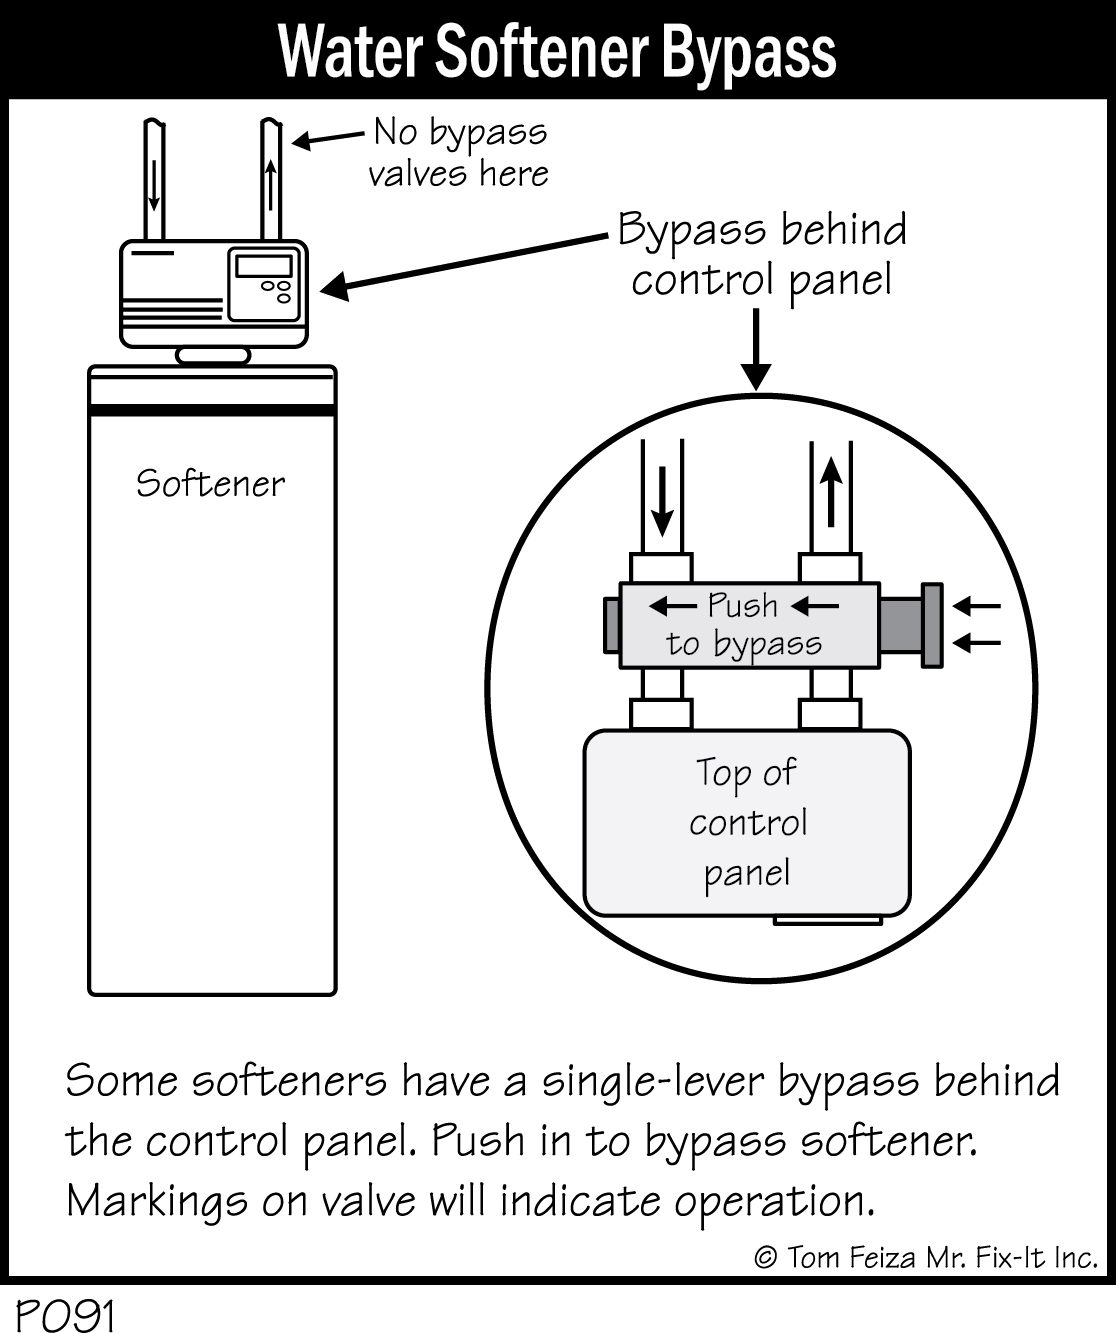 P091 - Water Softener Bypass